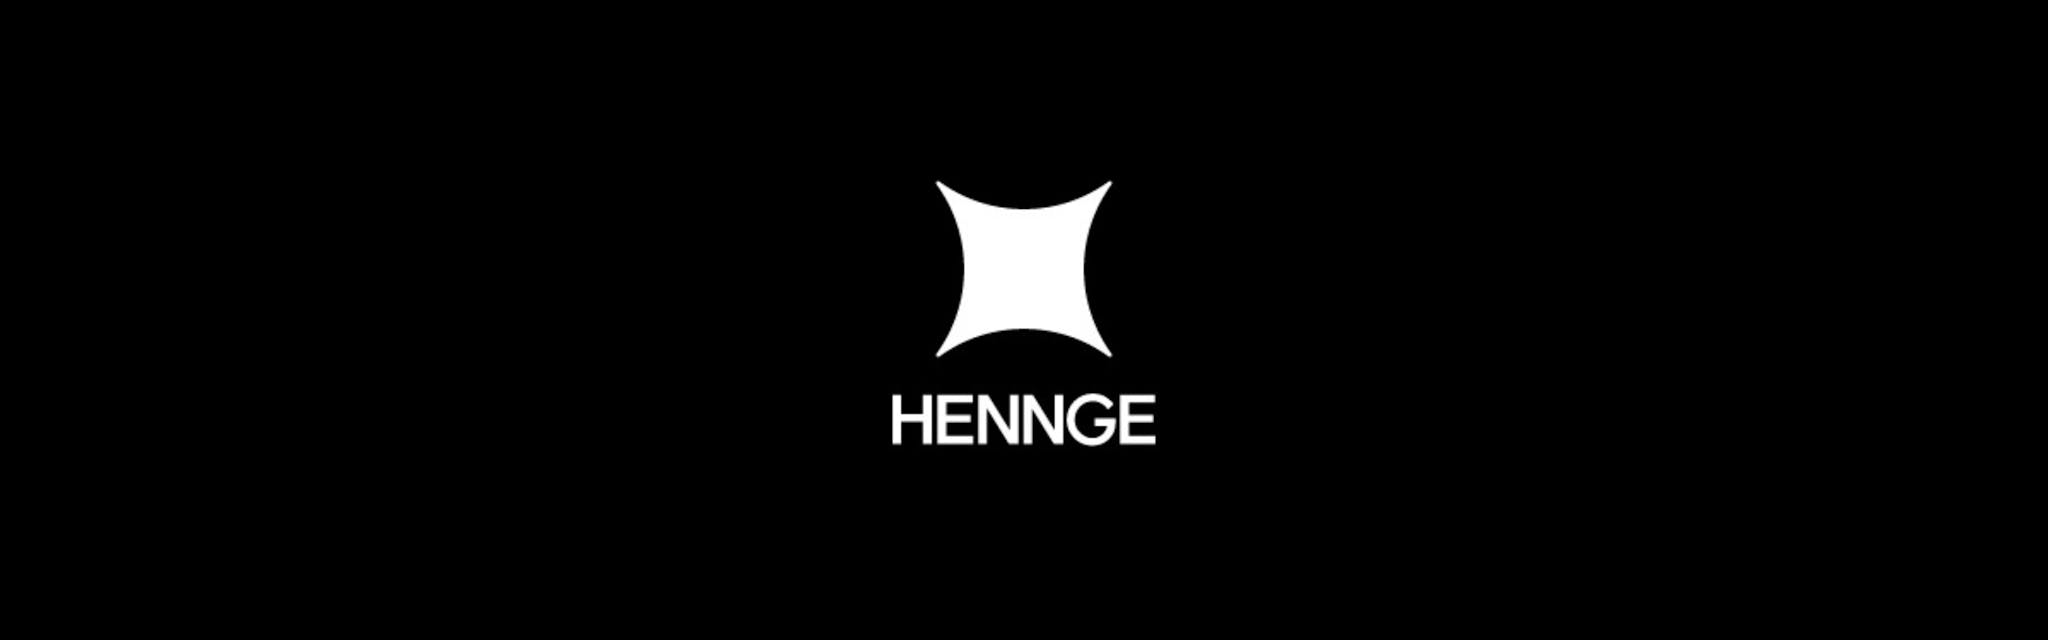 HENNGE株式会社 - メイン画像